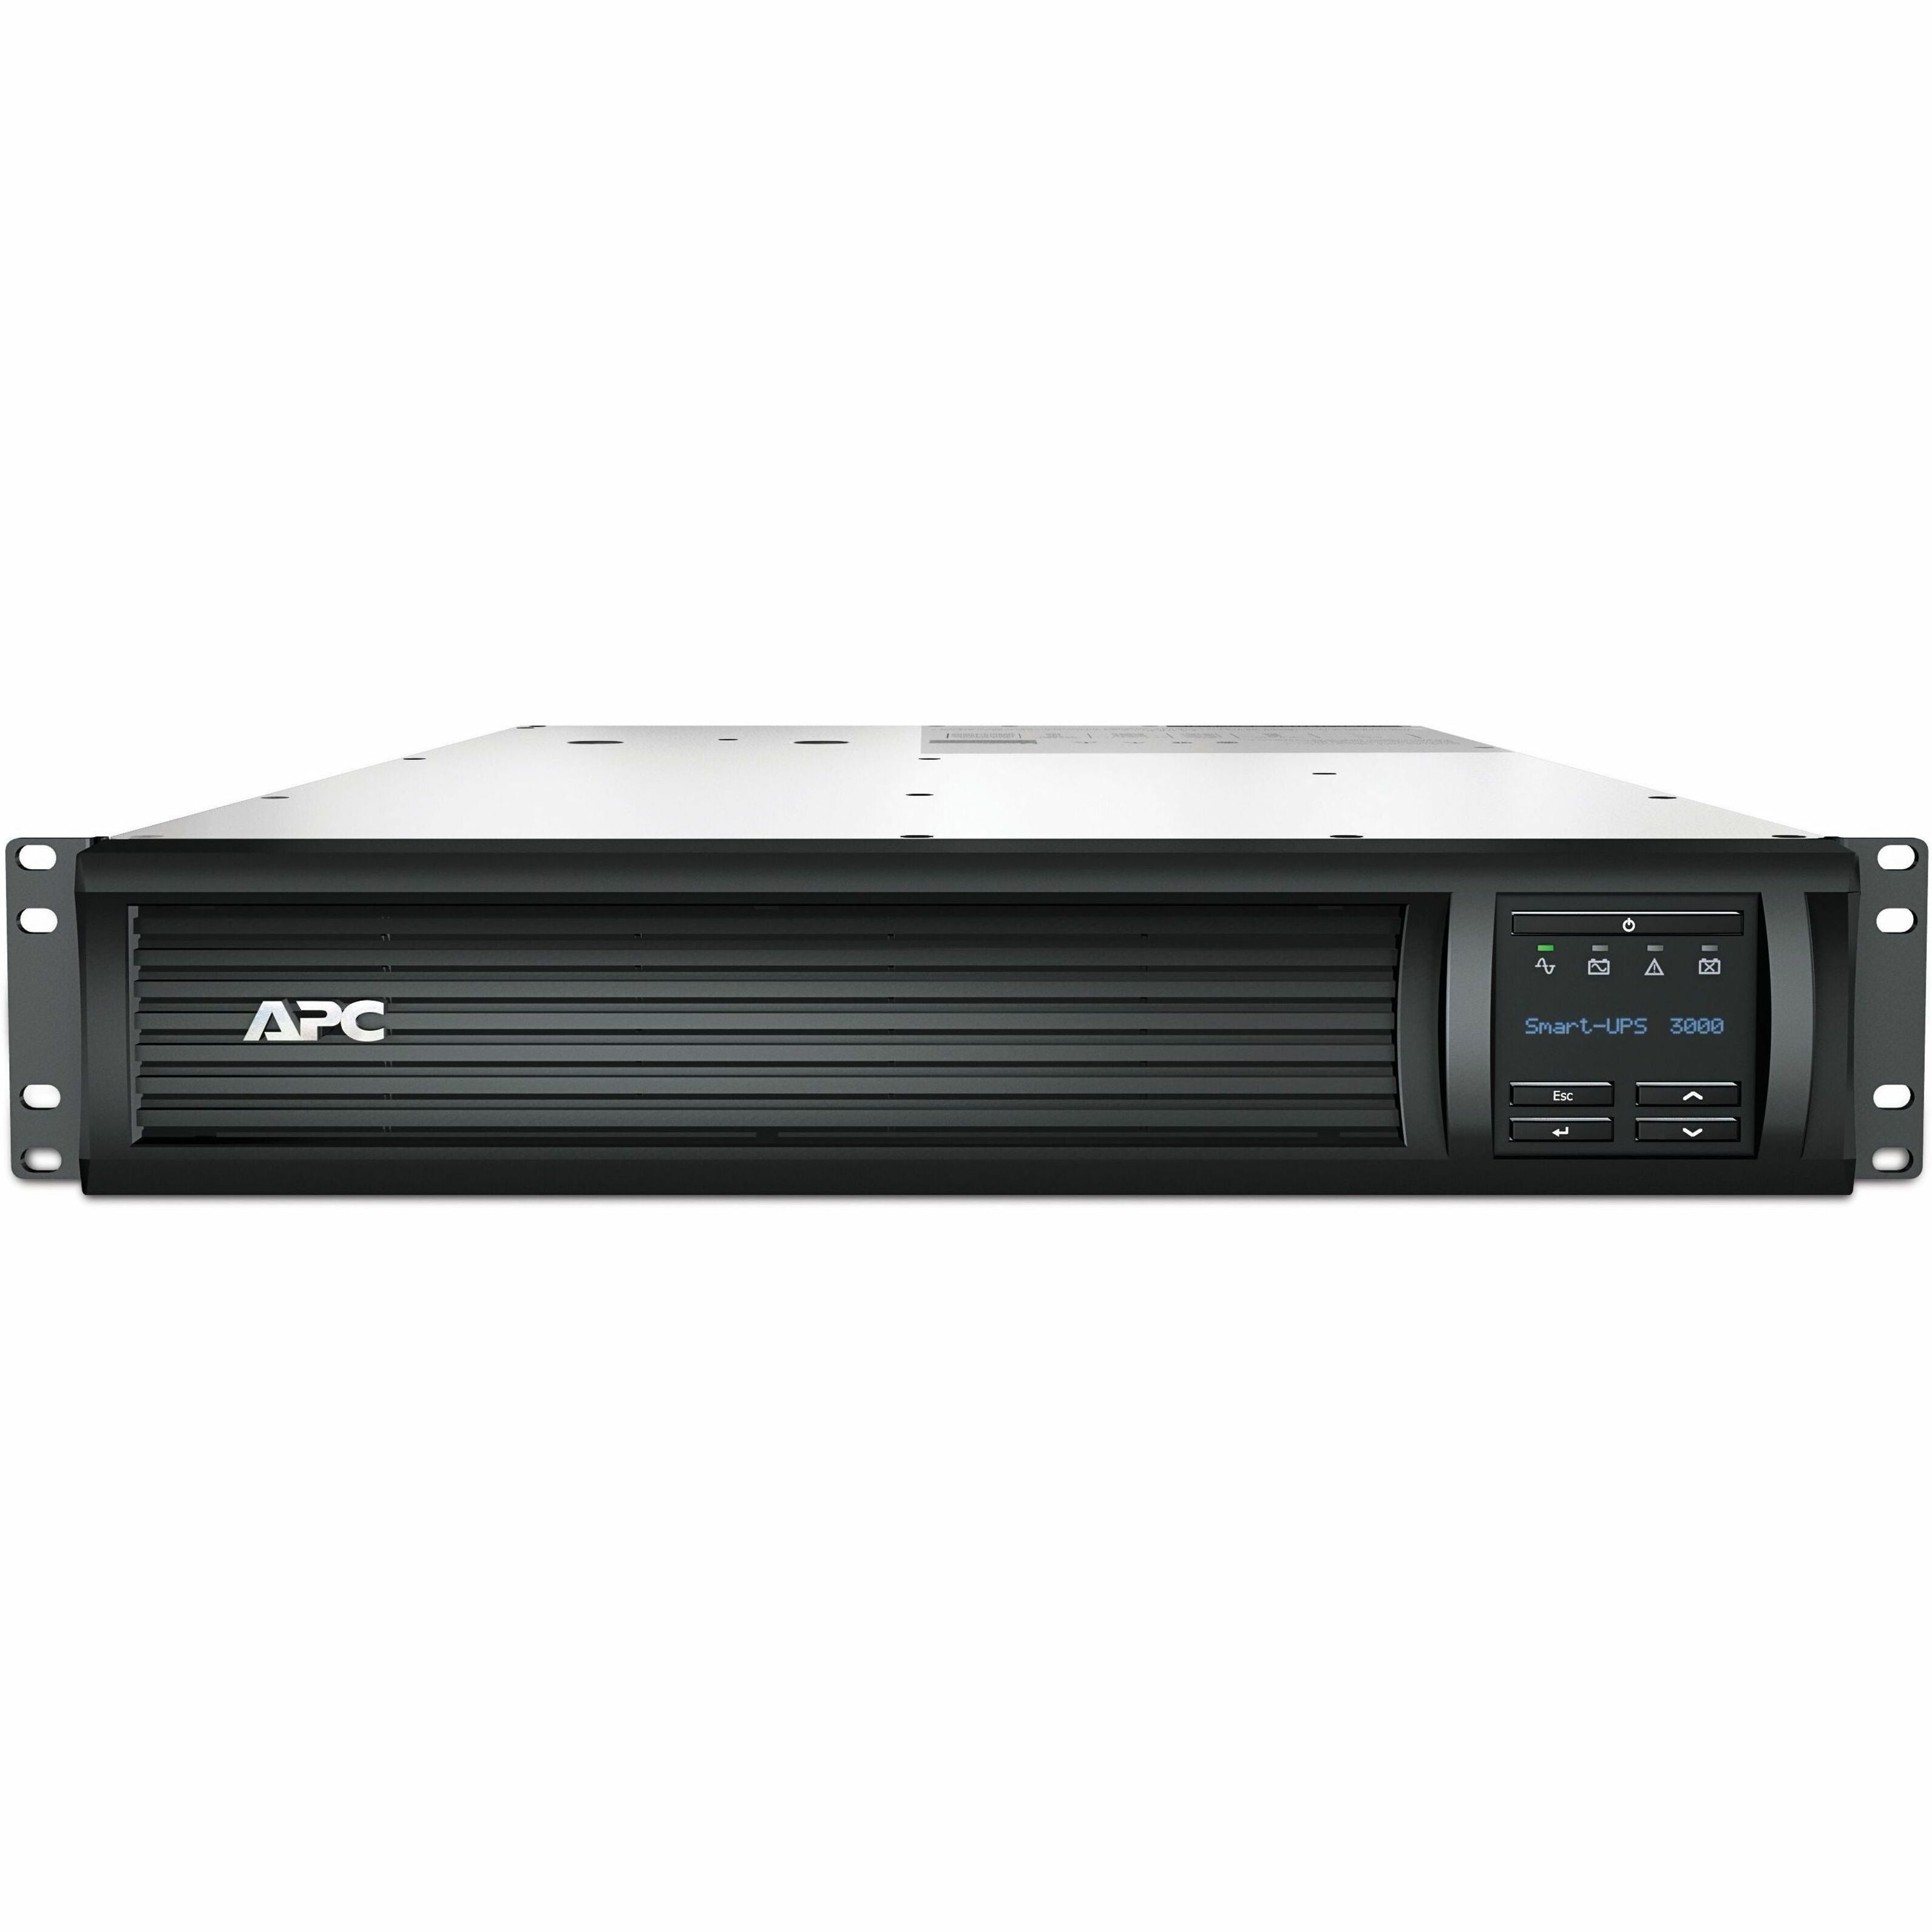 APC SMT3000R2X145 Smart UPS 3000VA LCD RM 2U 120V with 12FT Cord, 3 Year Warranty, 2880 VA/2700 W Load Capacity